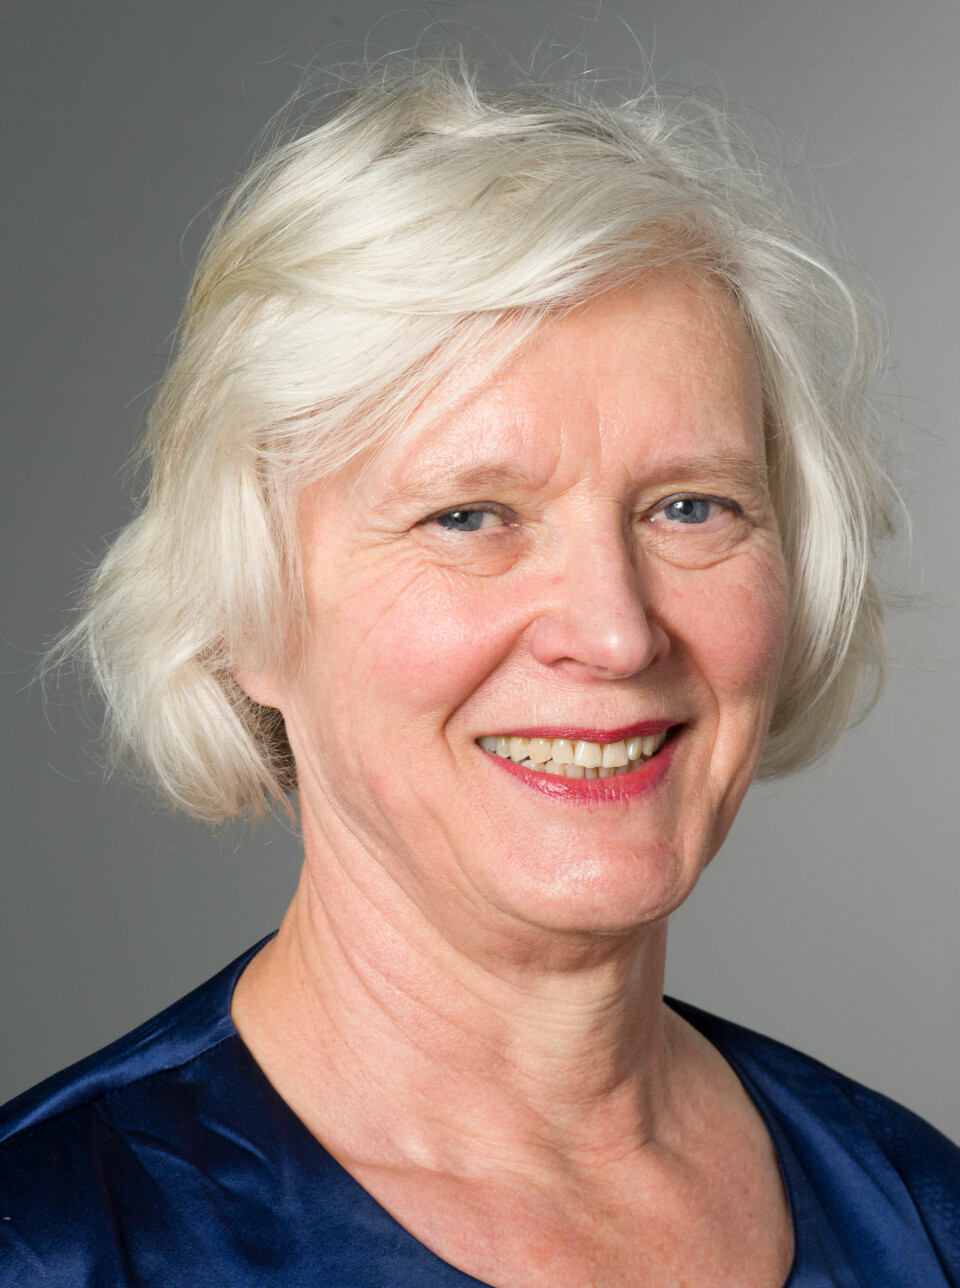 Hormonbehandling er veldig effektivt og hjelper godt for de aller, aller fleste, sier Britt Ingjerd Nesheim. Hun er professor emerita ved Universitetet i Oslo og pensjonert spesialist i fødselshjelp og kvinnesykdommer.